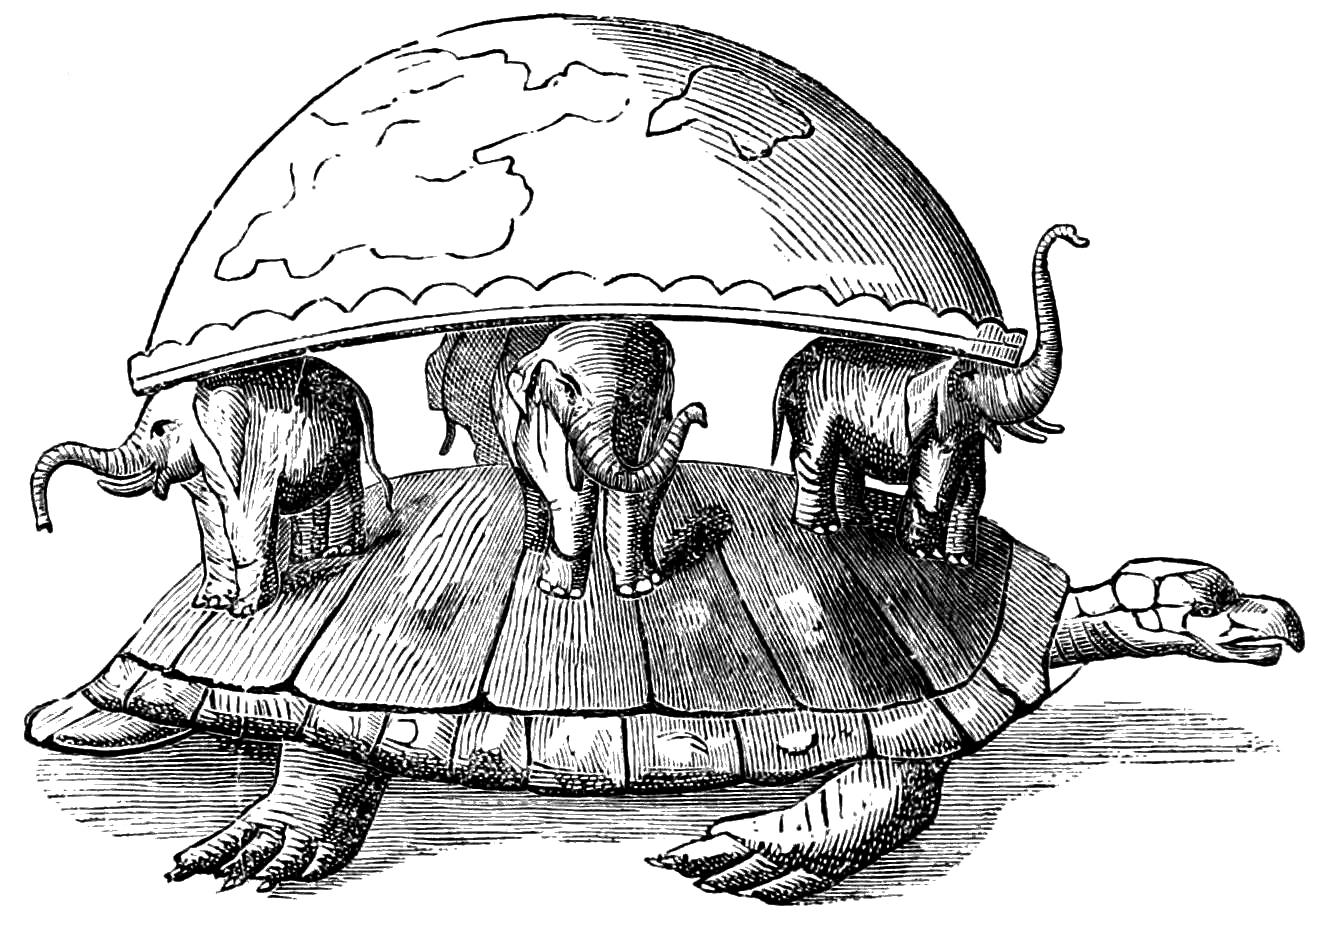 Il mito cosmologico indiano dell'elefante e la tartaruga